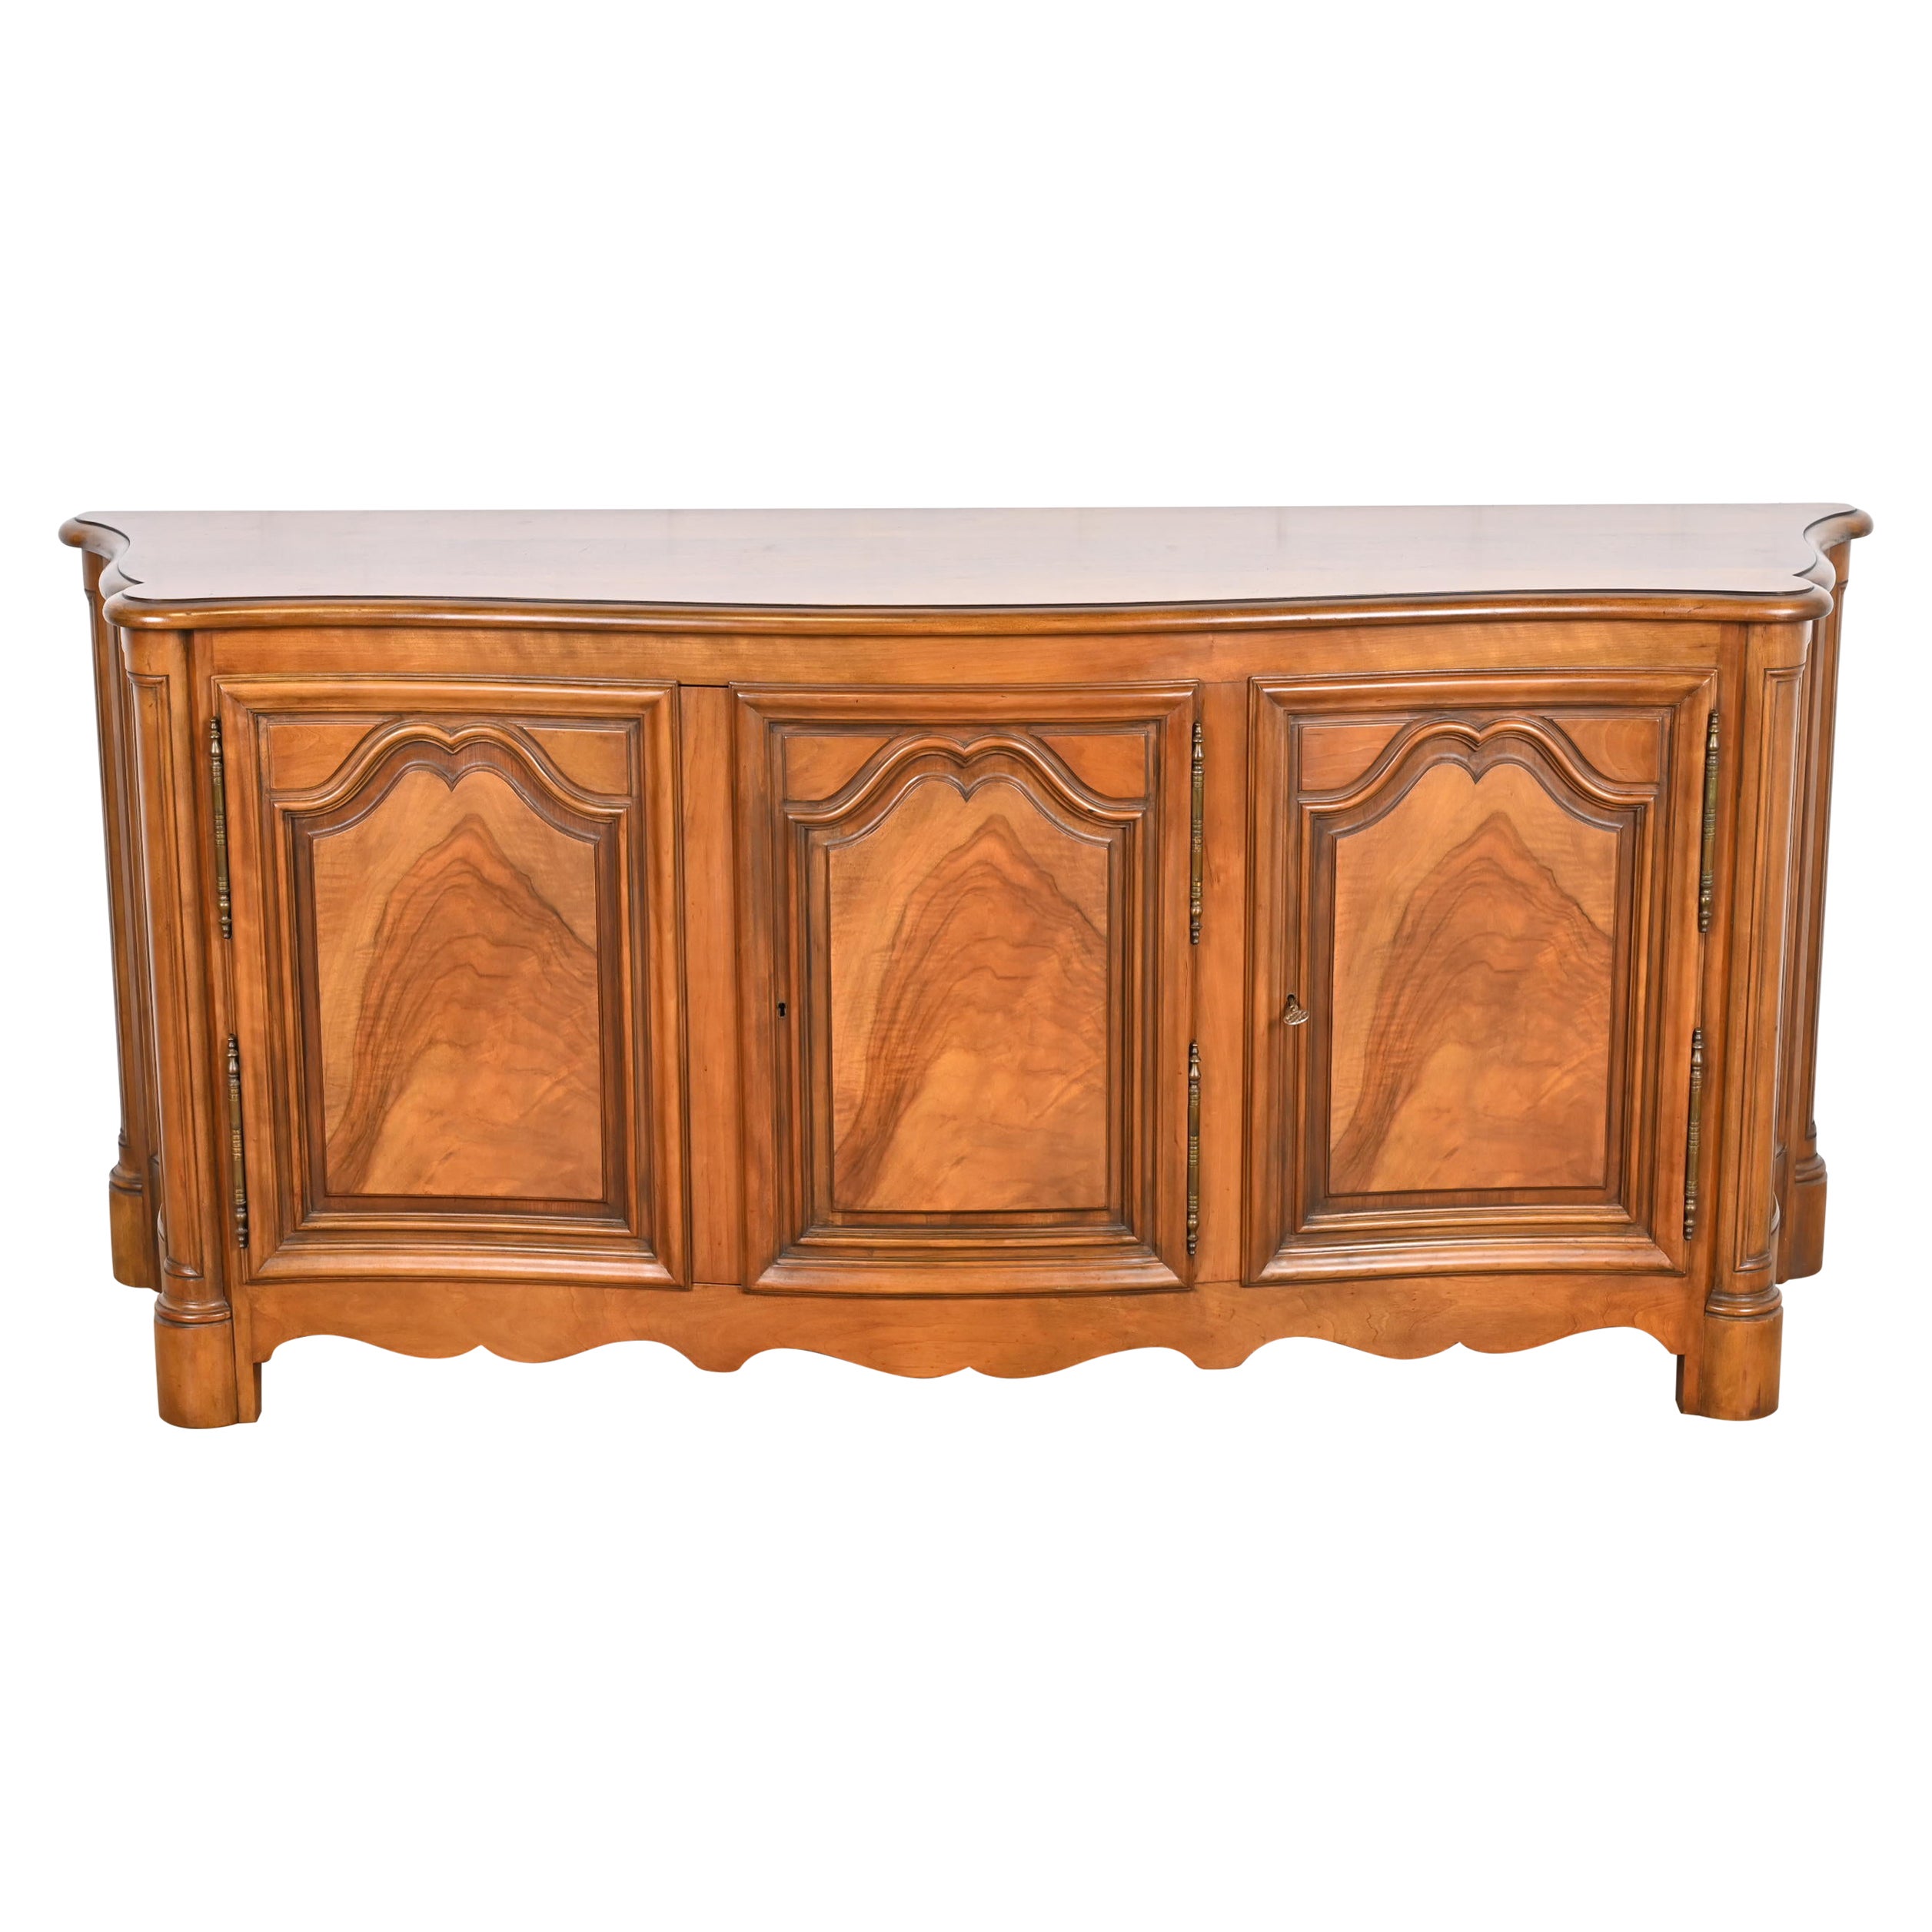 Baker Furniture French Provincial Burled Walnut Sideboard or Bar Cabinet